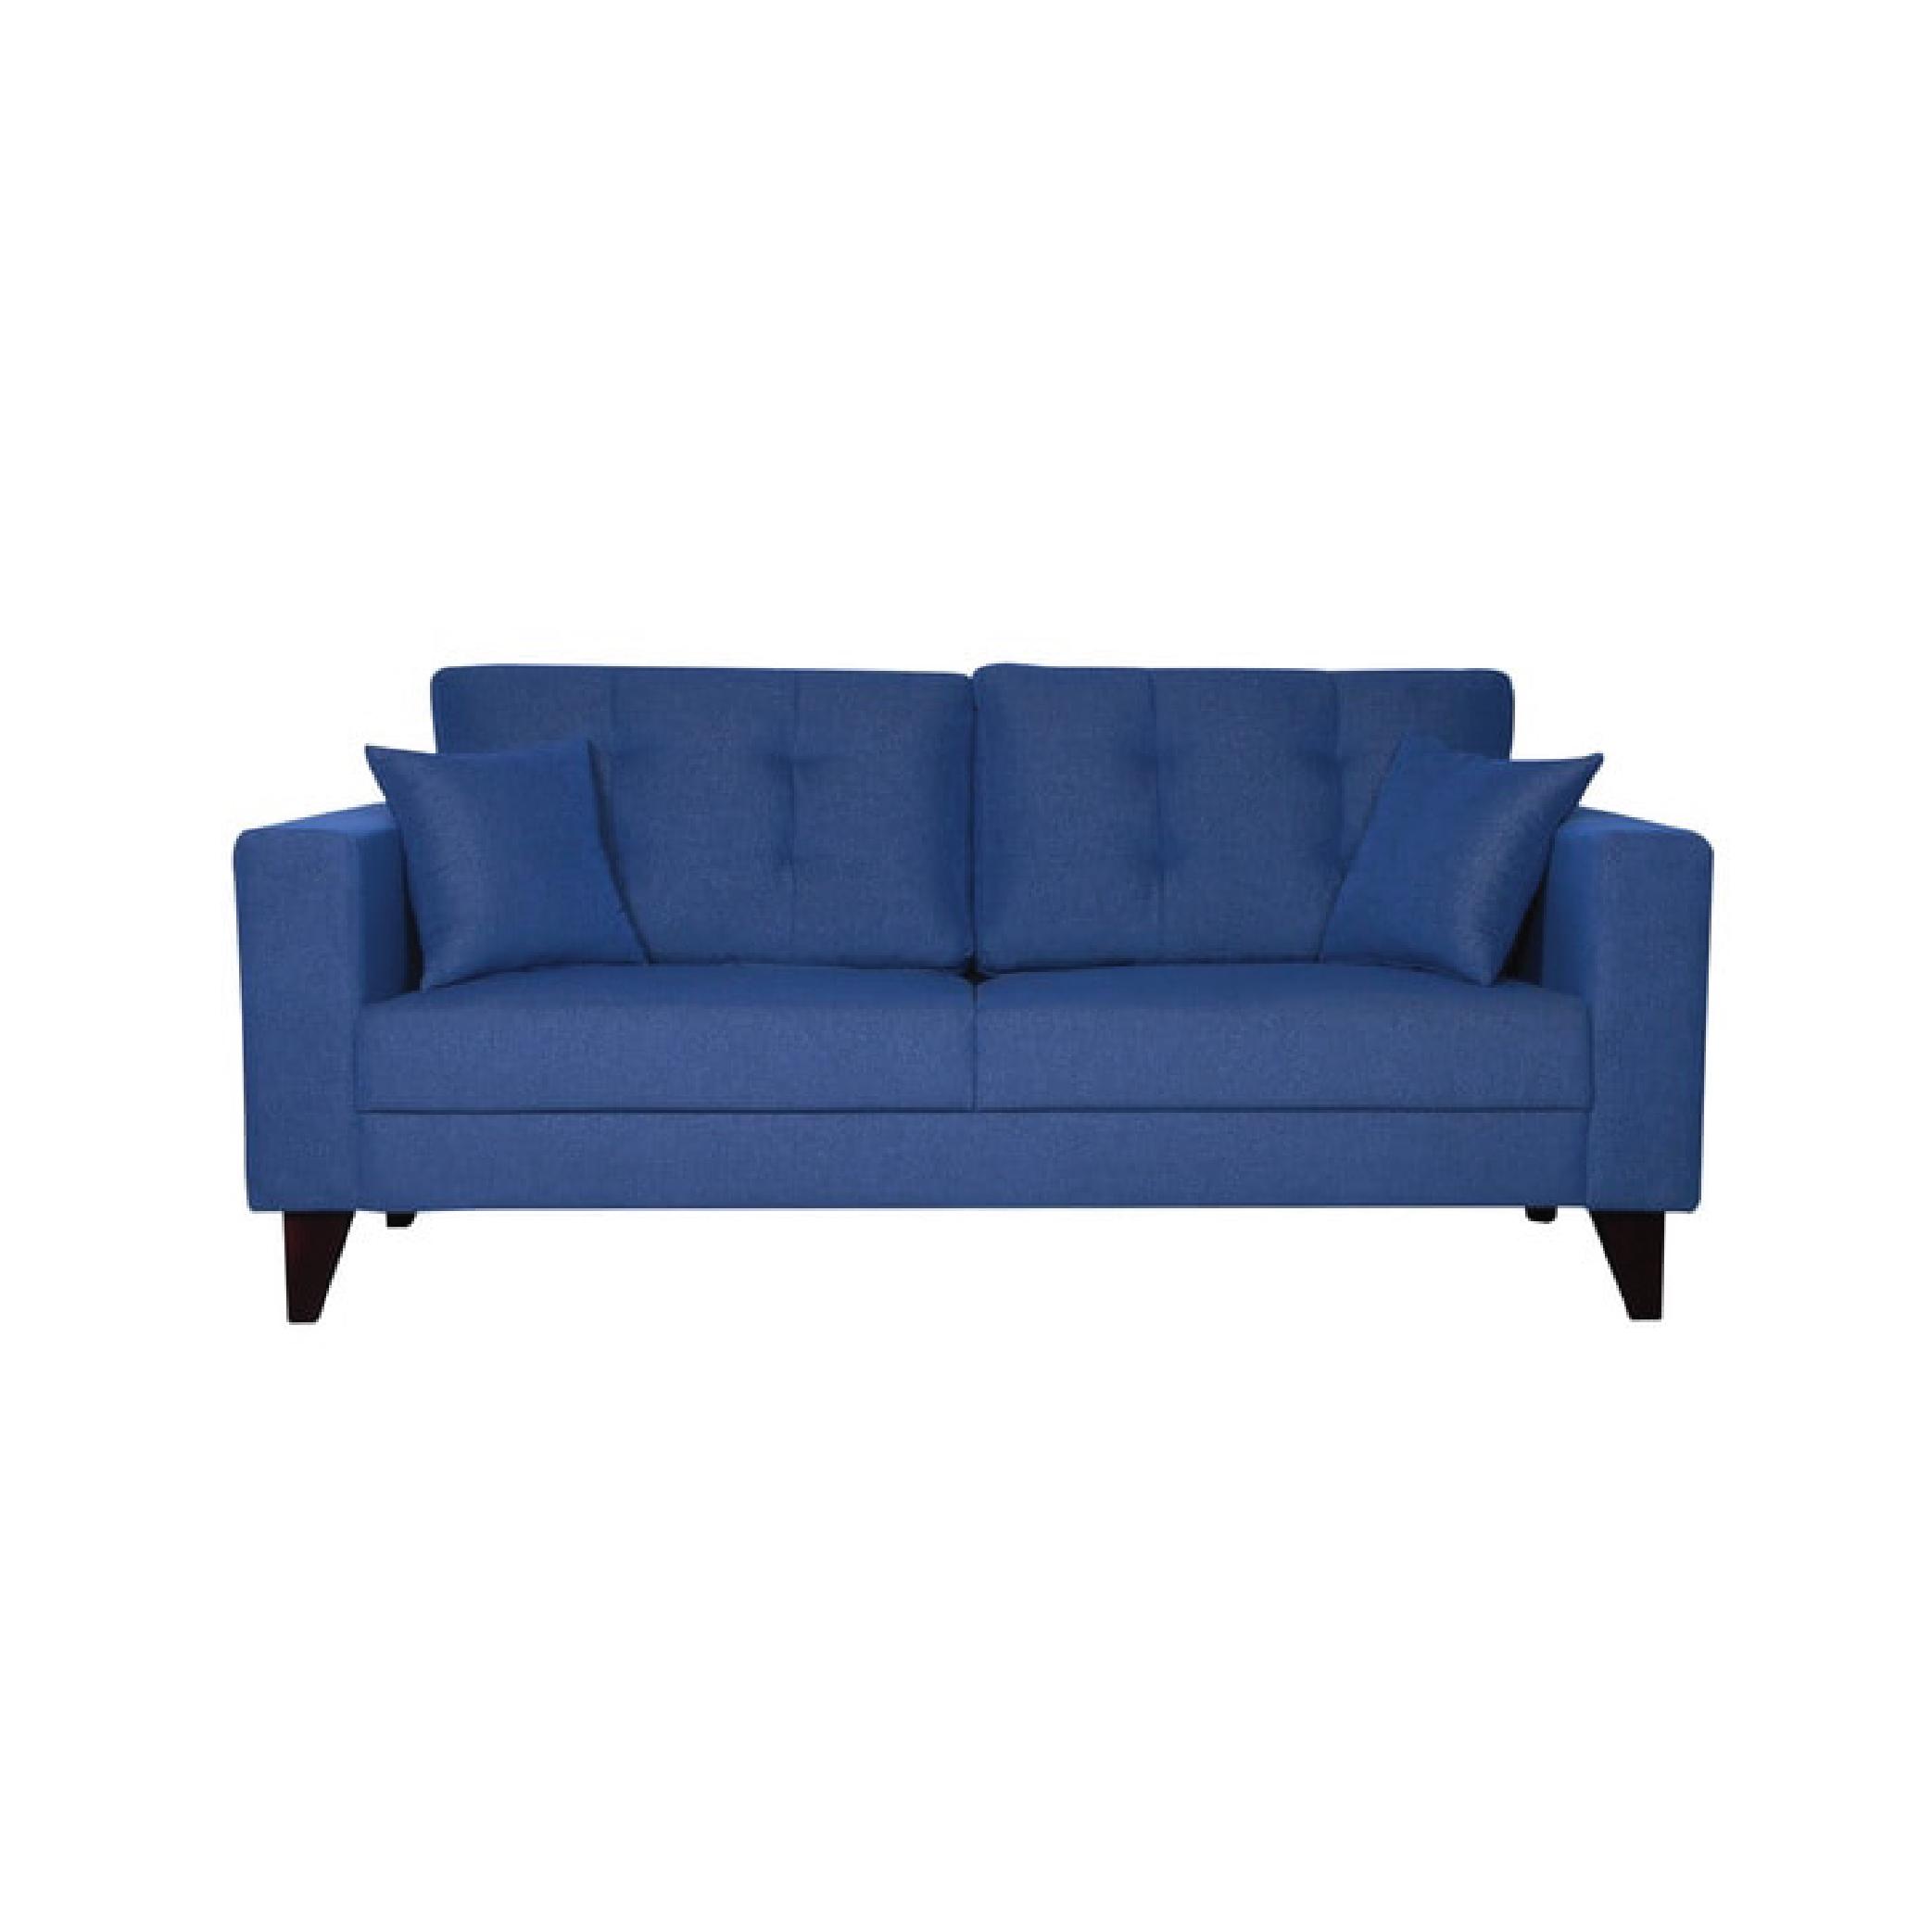 Inferio Three Seater Sofa in Denim Blue Colour